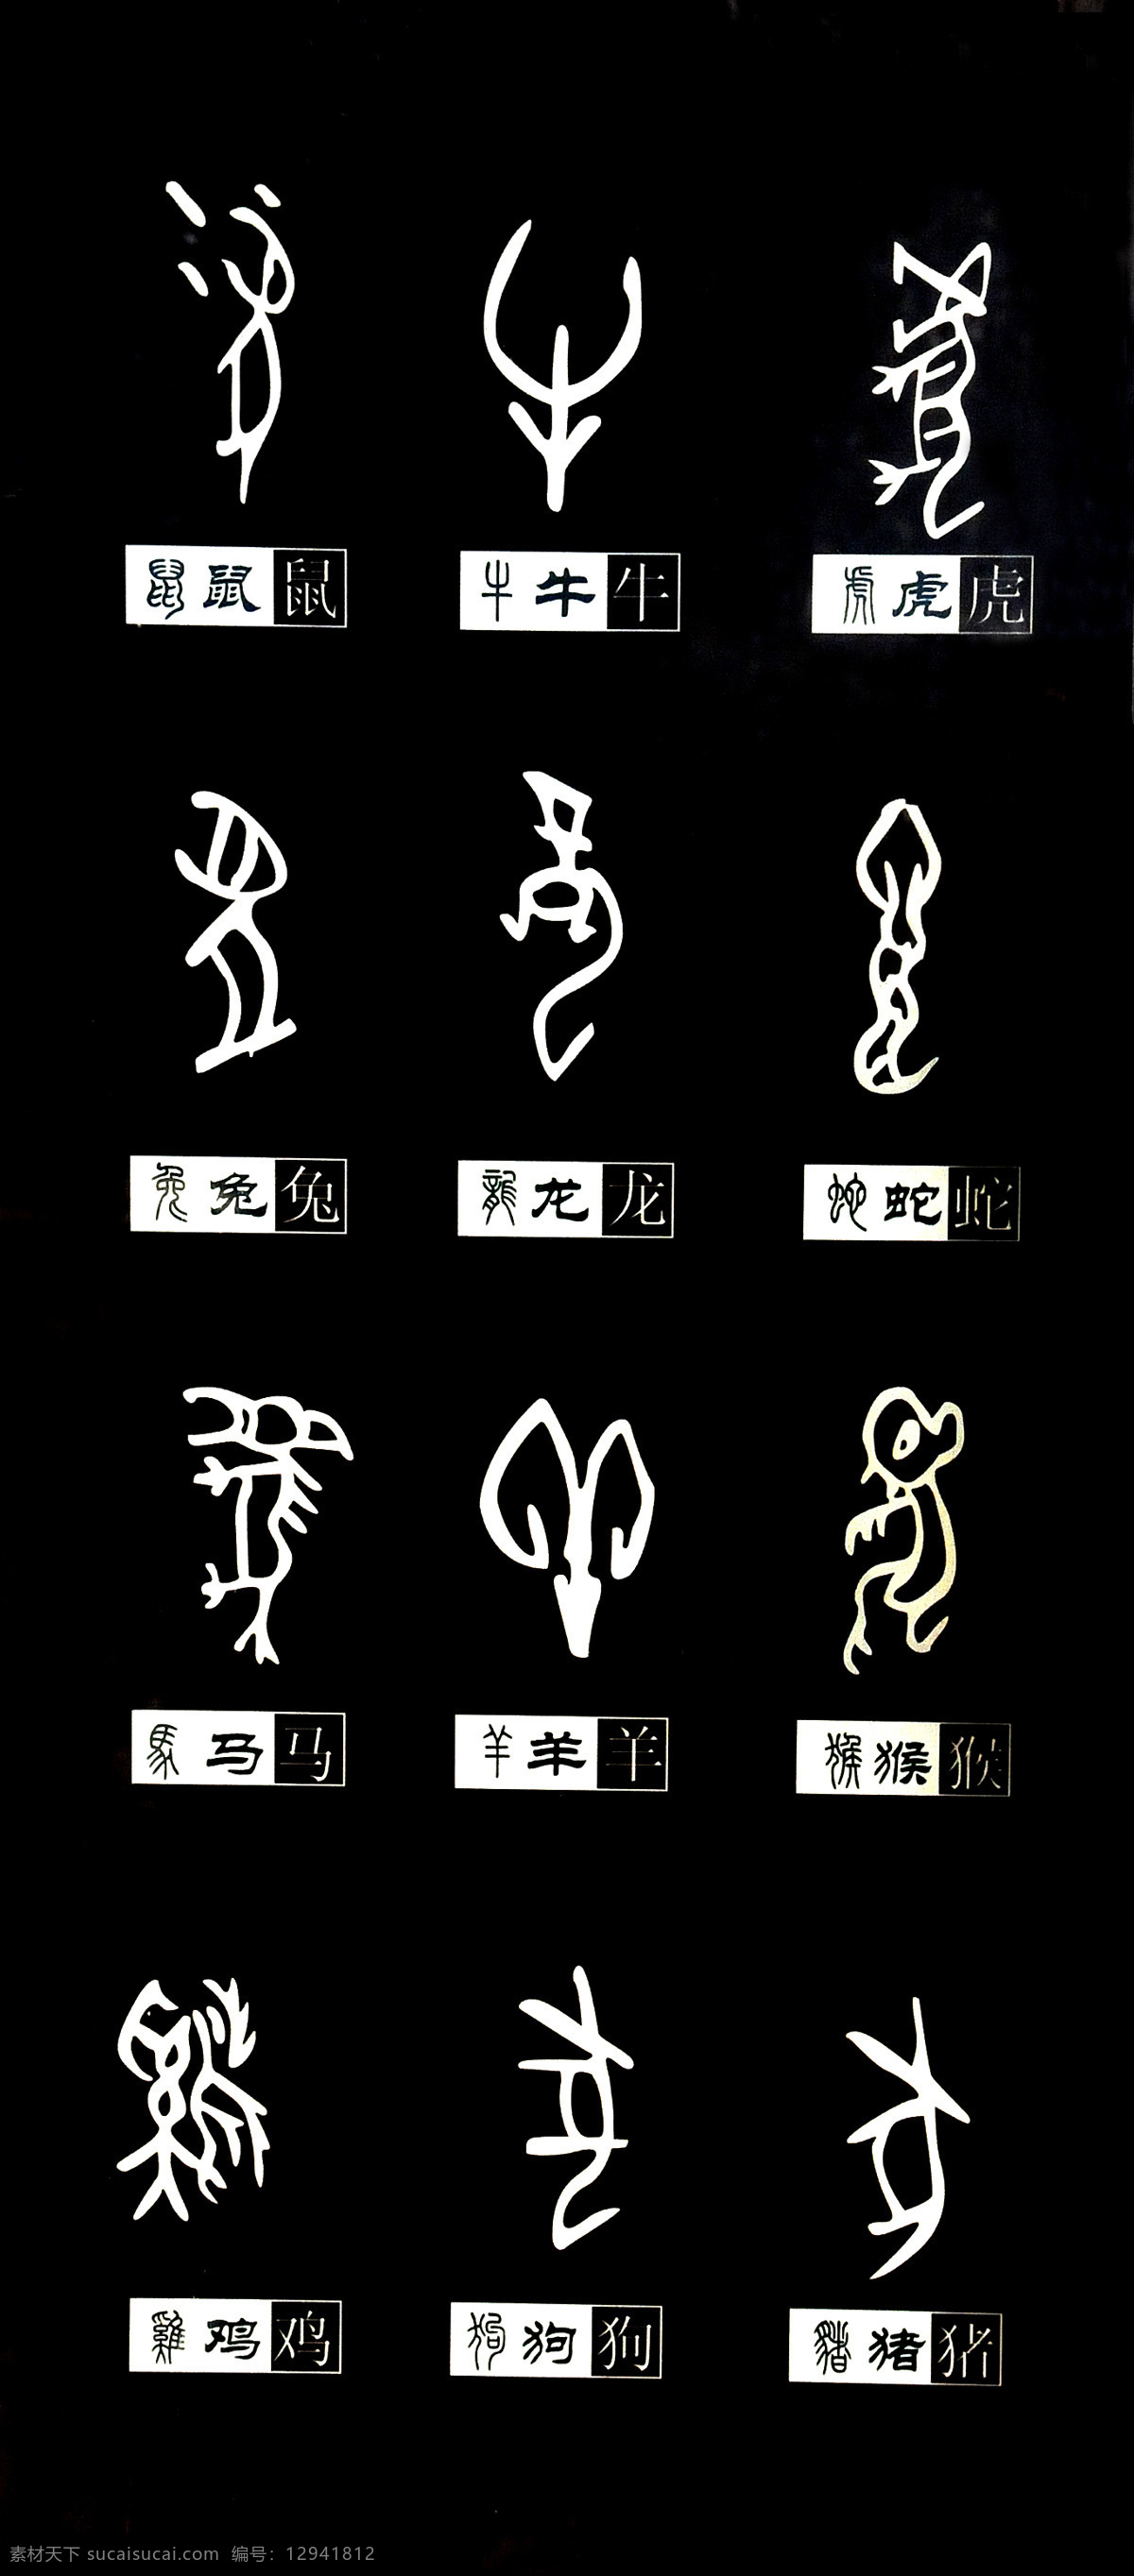 传统文化 甲骨文 十二生肖 文化艺术 文字 设计素材 模板下载 甲骨文对照 生肖字体